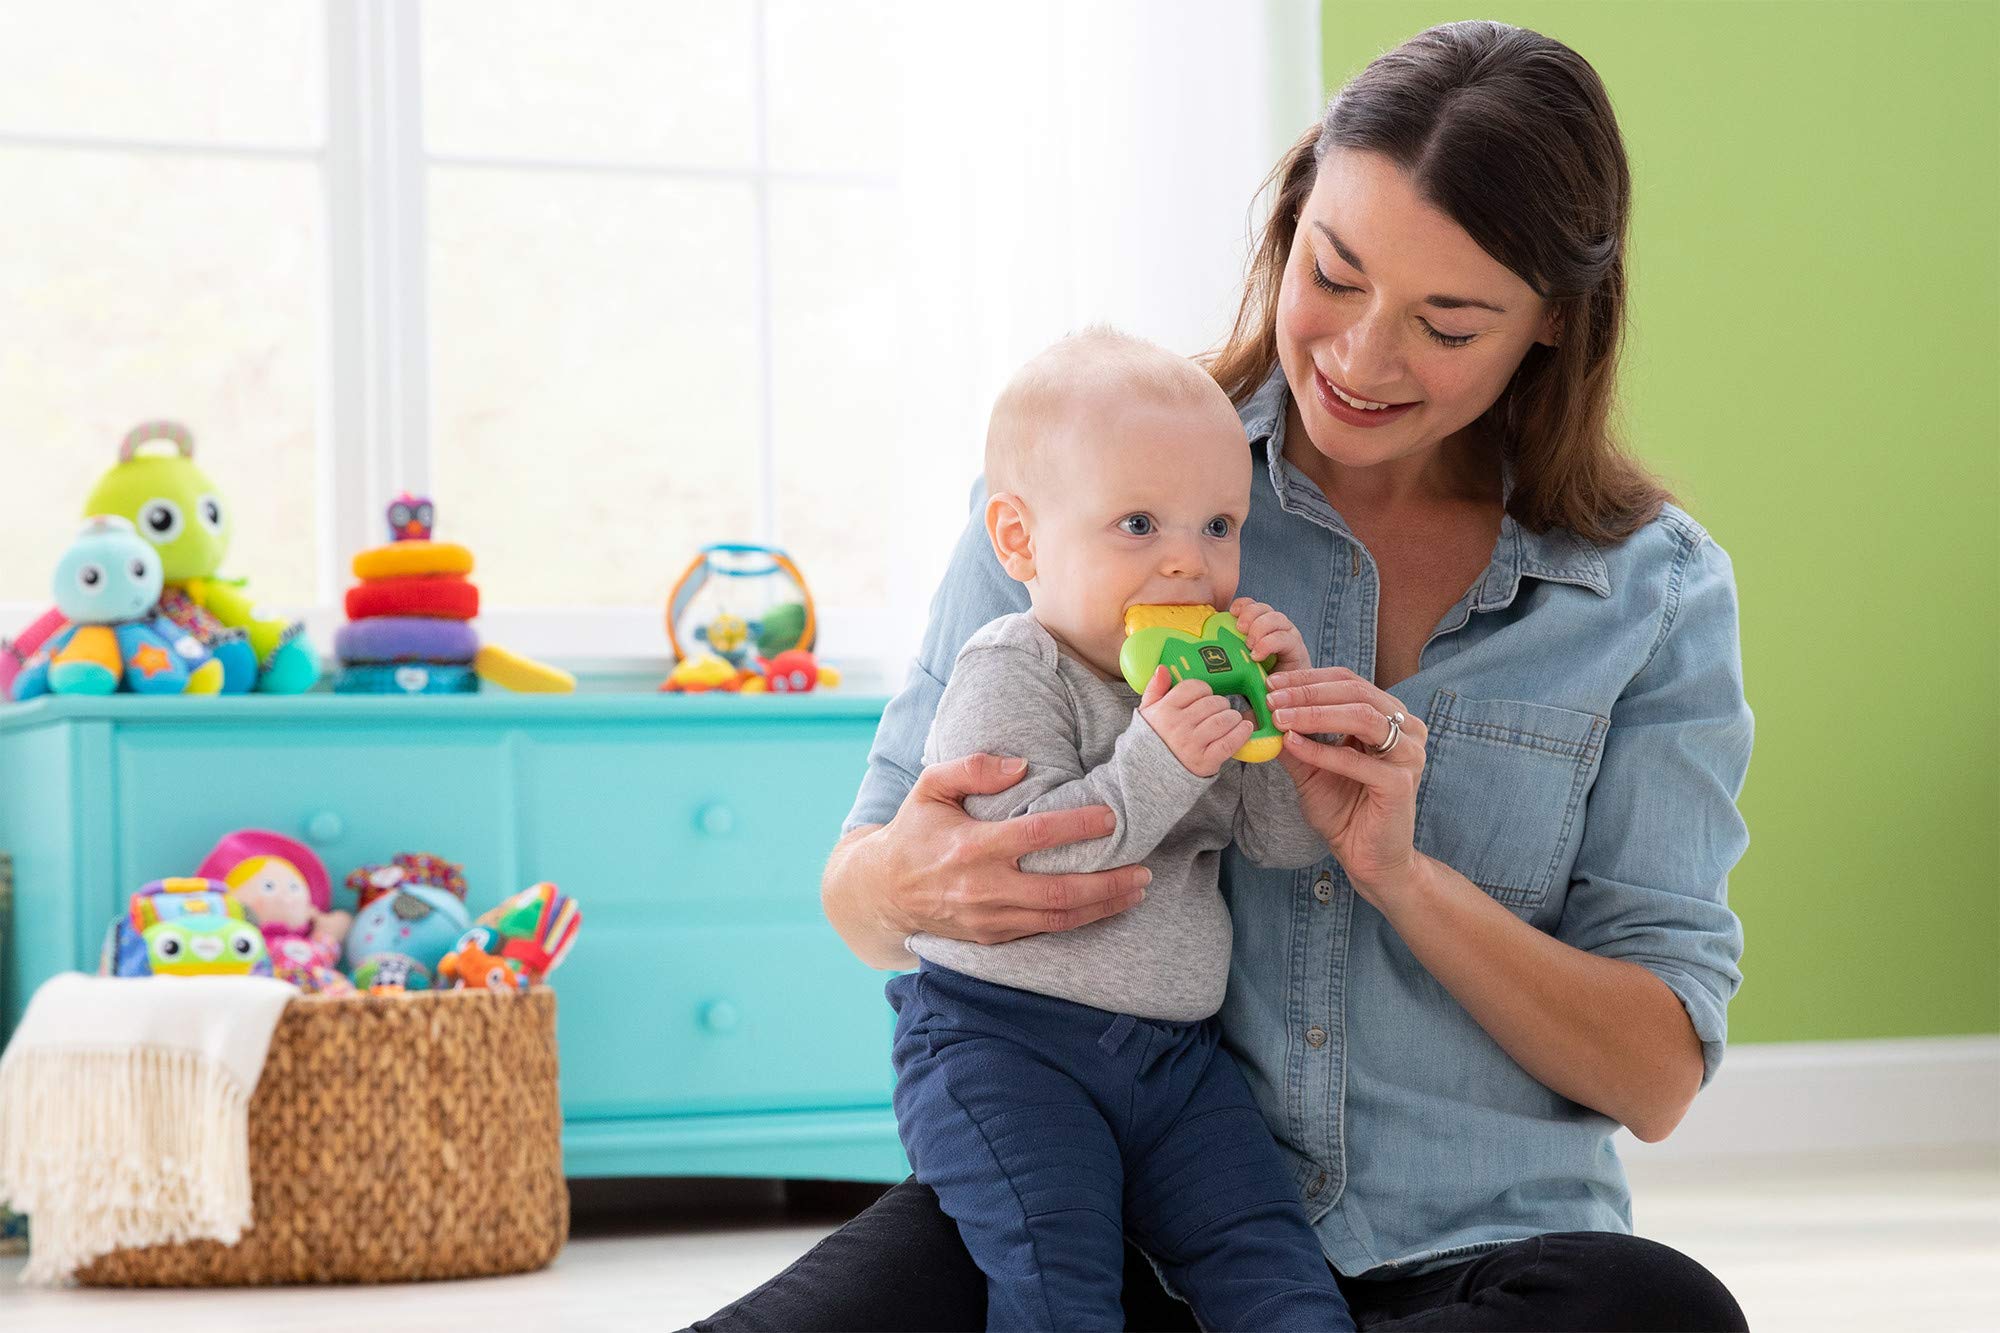 Lamaze John Deere Corn Massaging Baby Teether - John Deere Baby Teething Toy - Newborn Toys for Baby Teething Relief